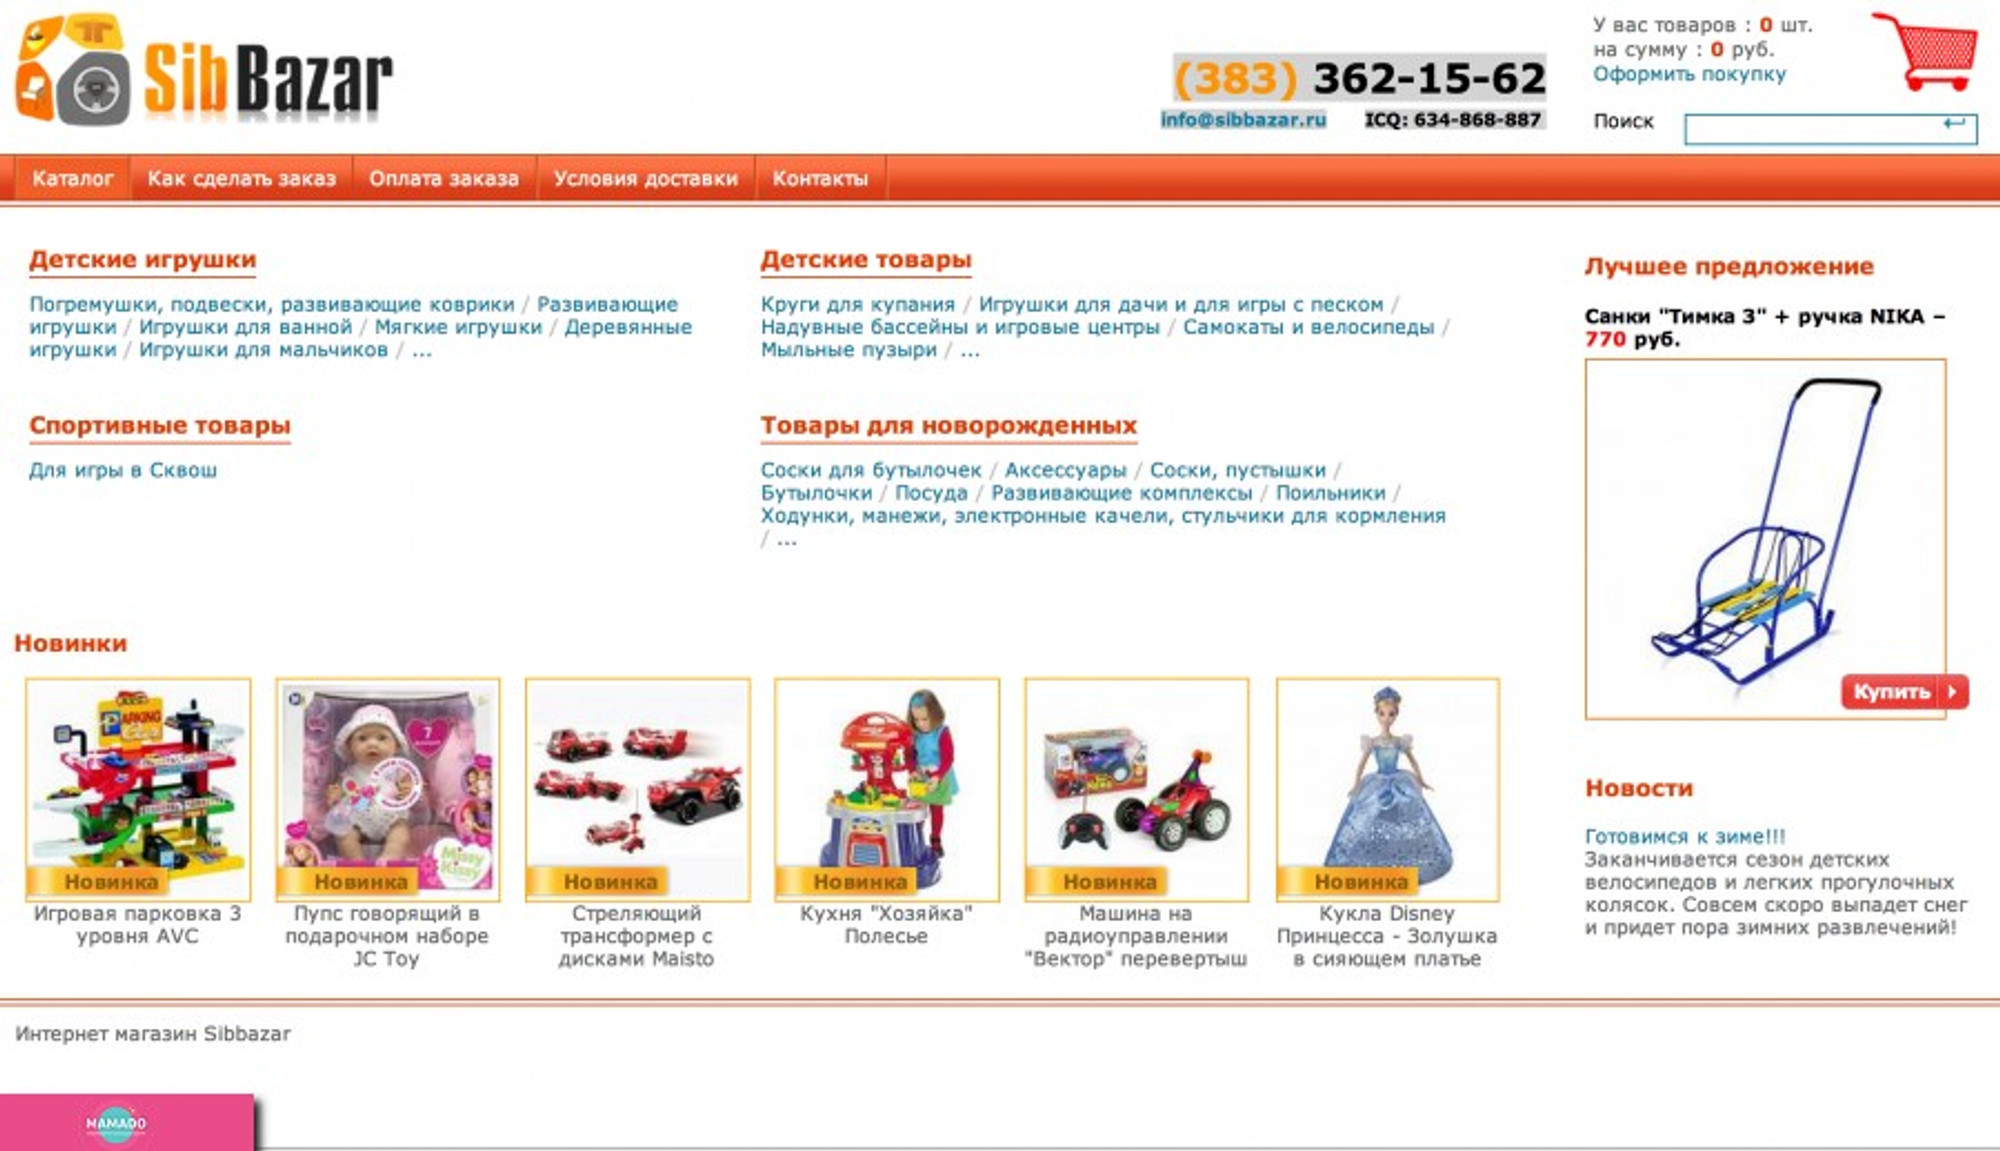 SibBazar, интернет-магазин игрушек и товаров для новорожденных в Новосибирске 